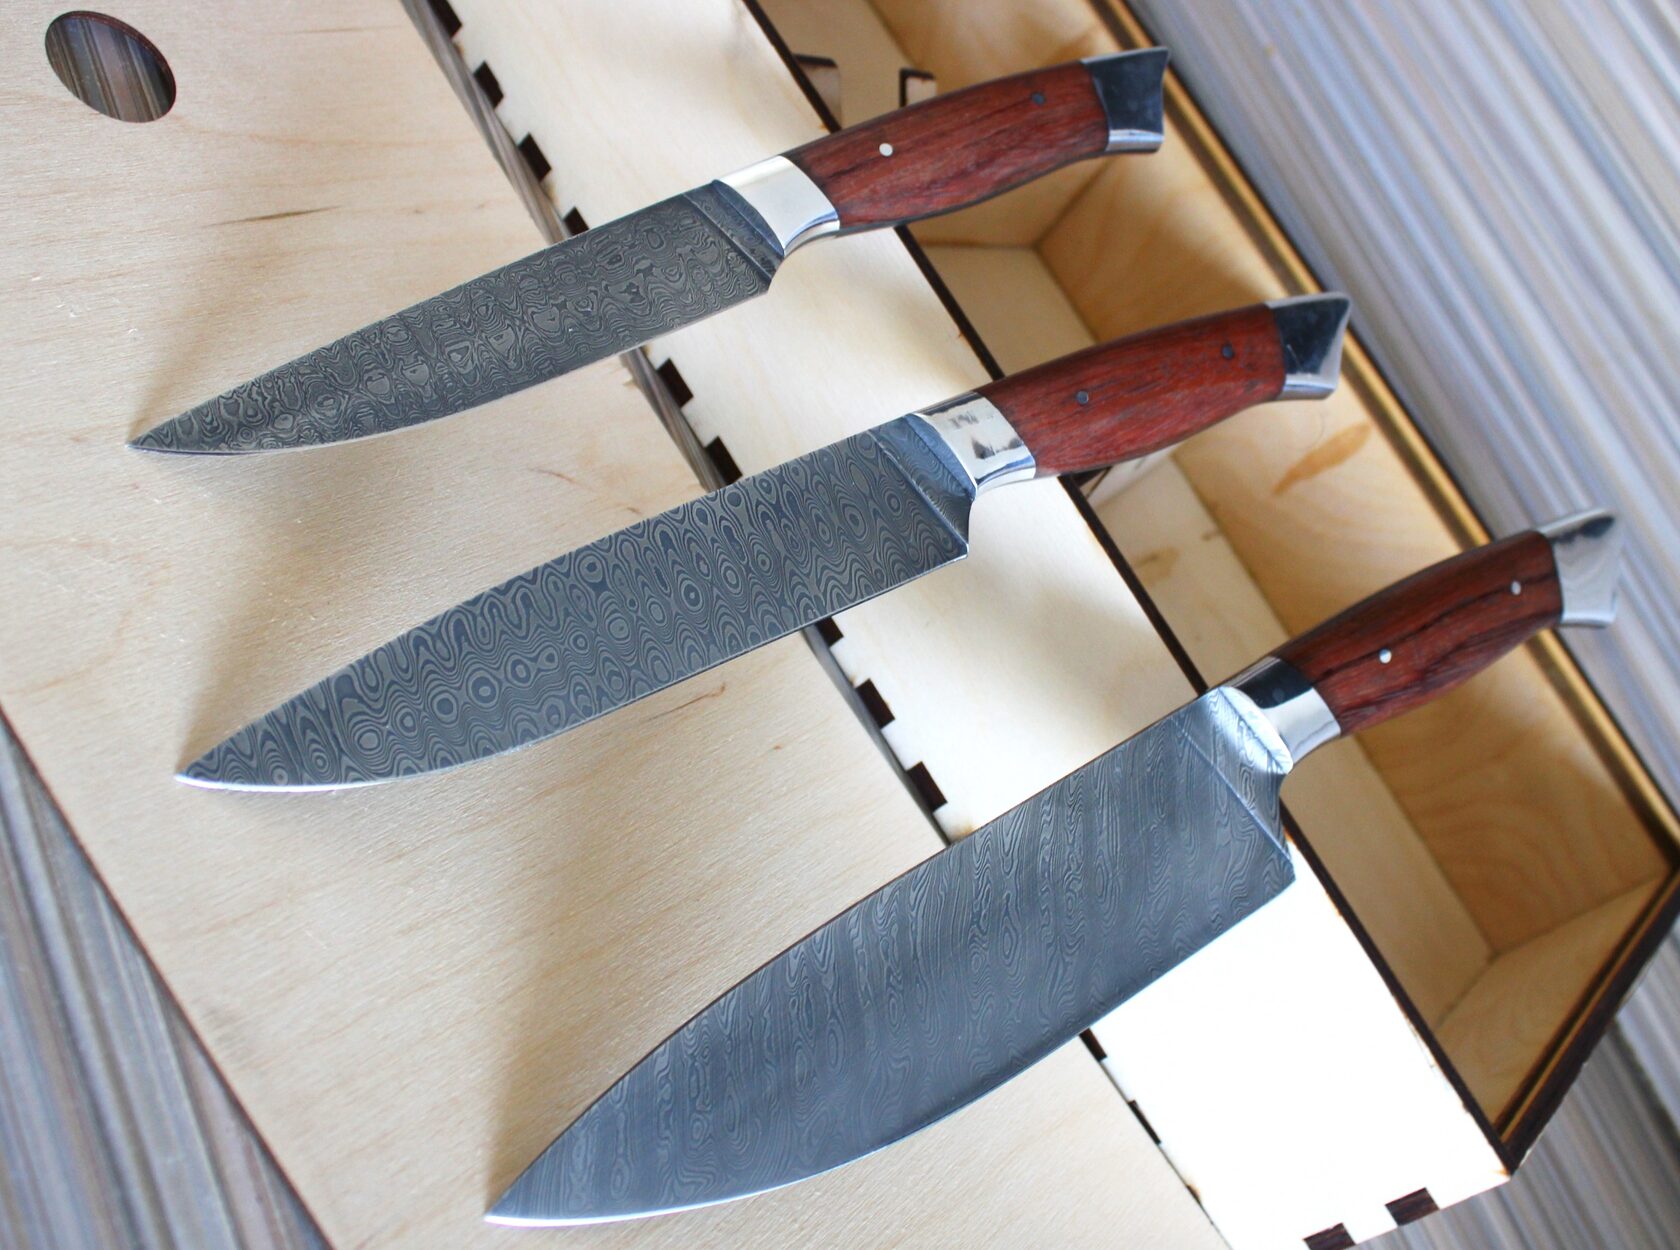  кухонных ножей из дамасской стали - Ножи Павлово, Россия